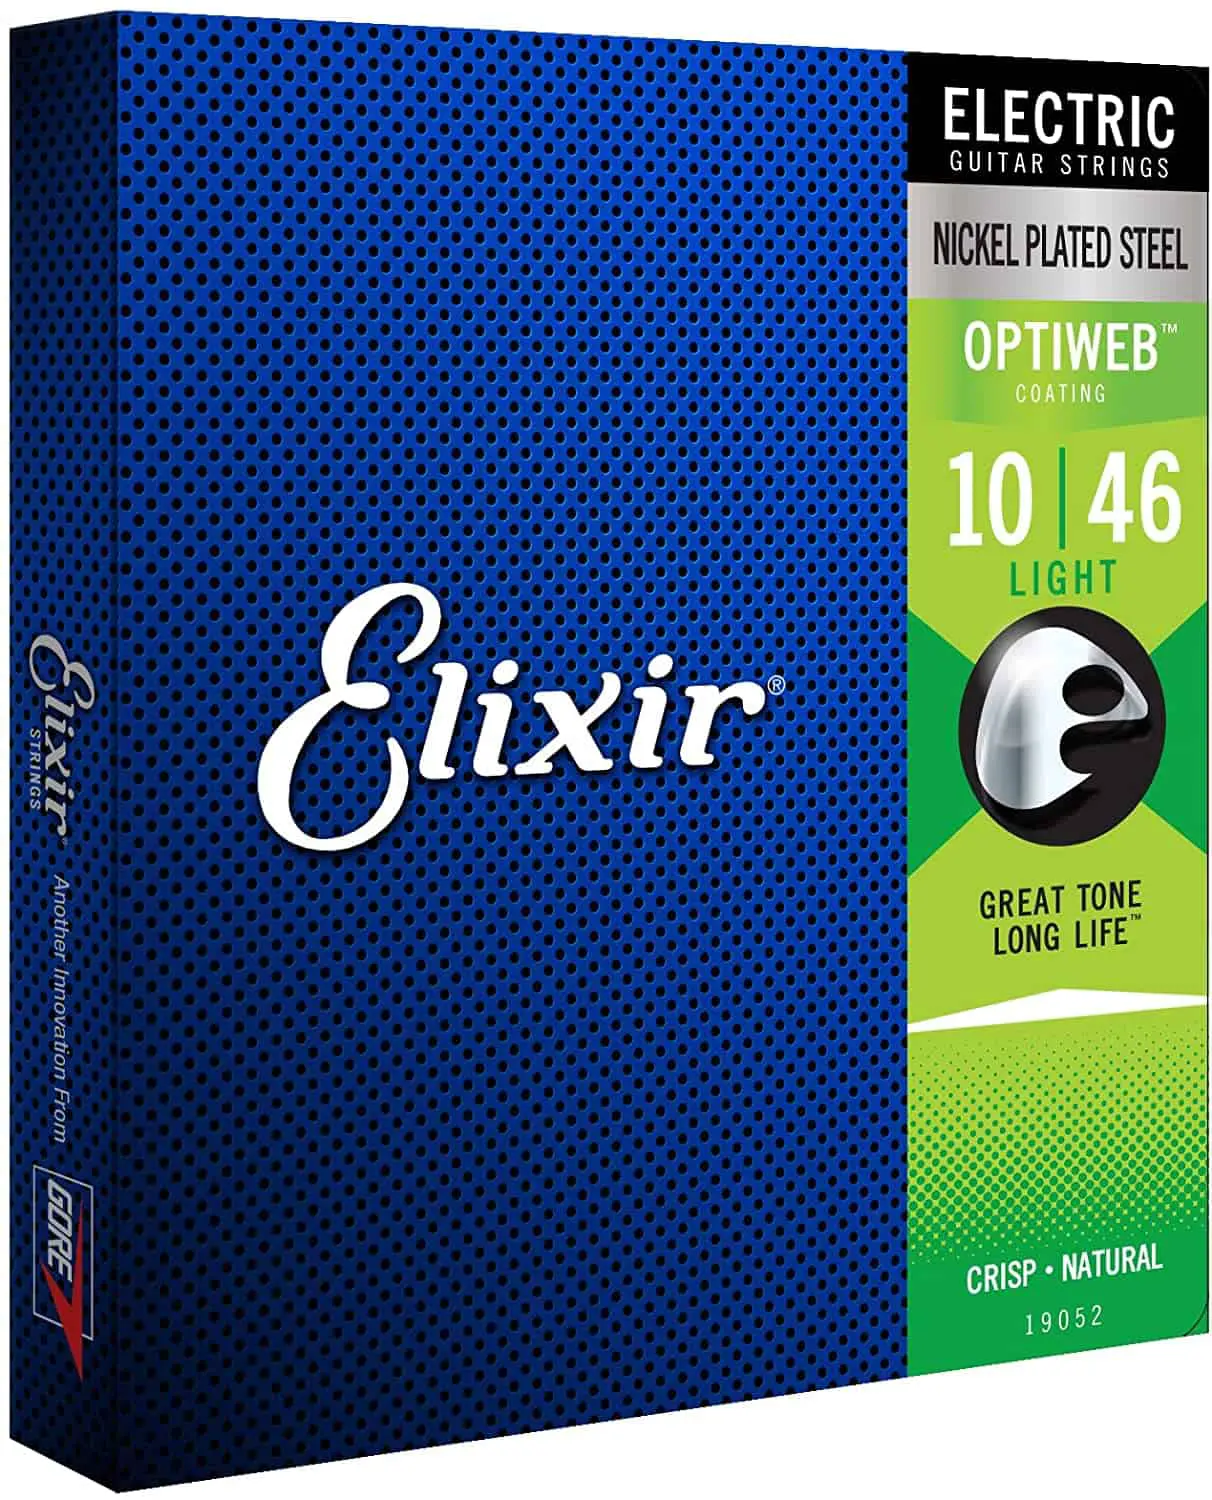 ความรู้สึกที่ดีที่สุด: Elixir Optiweb